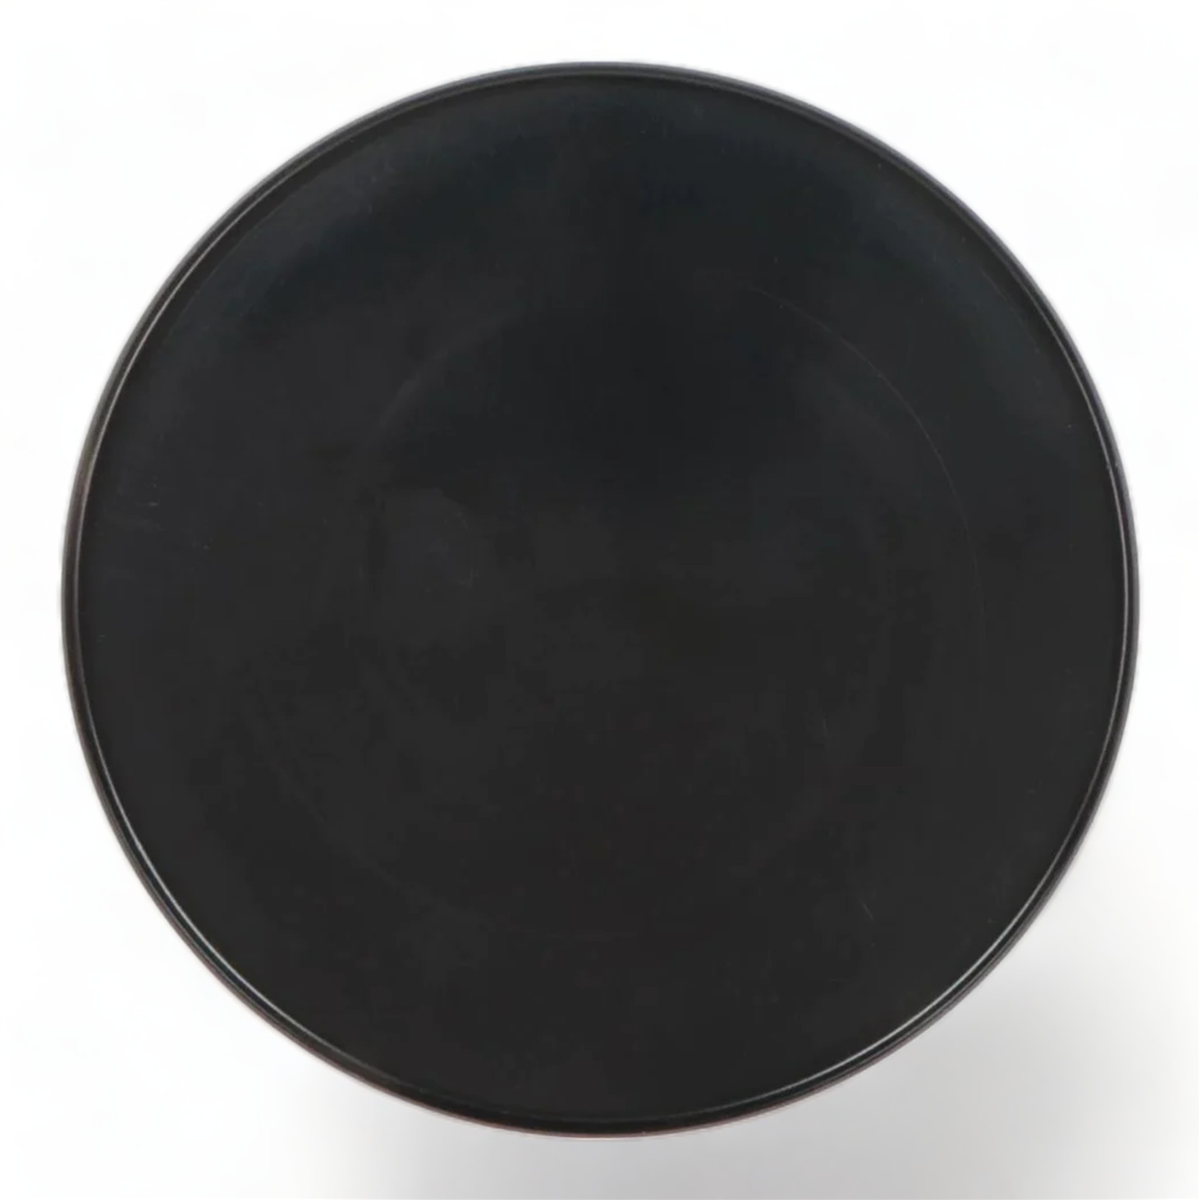 Coiltek Skid Plate 9" Round Black